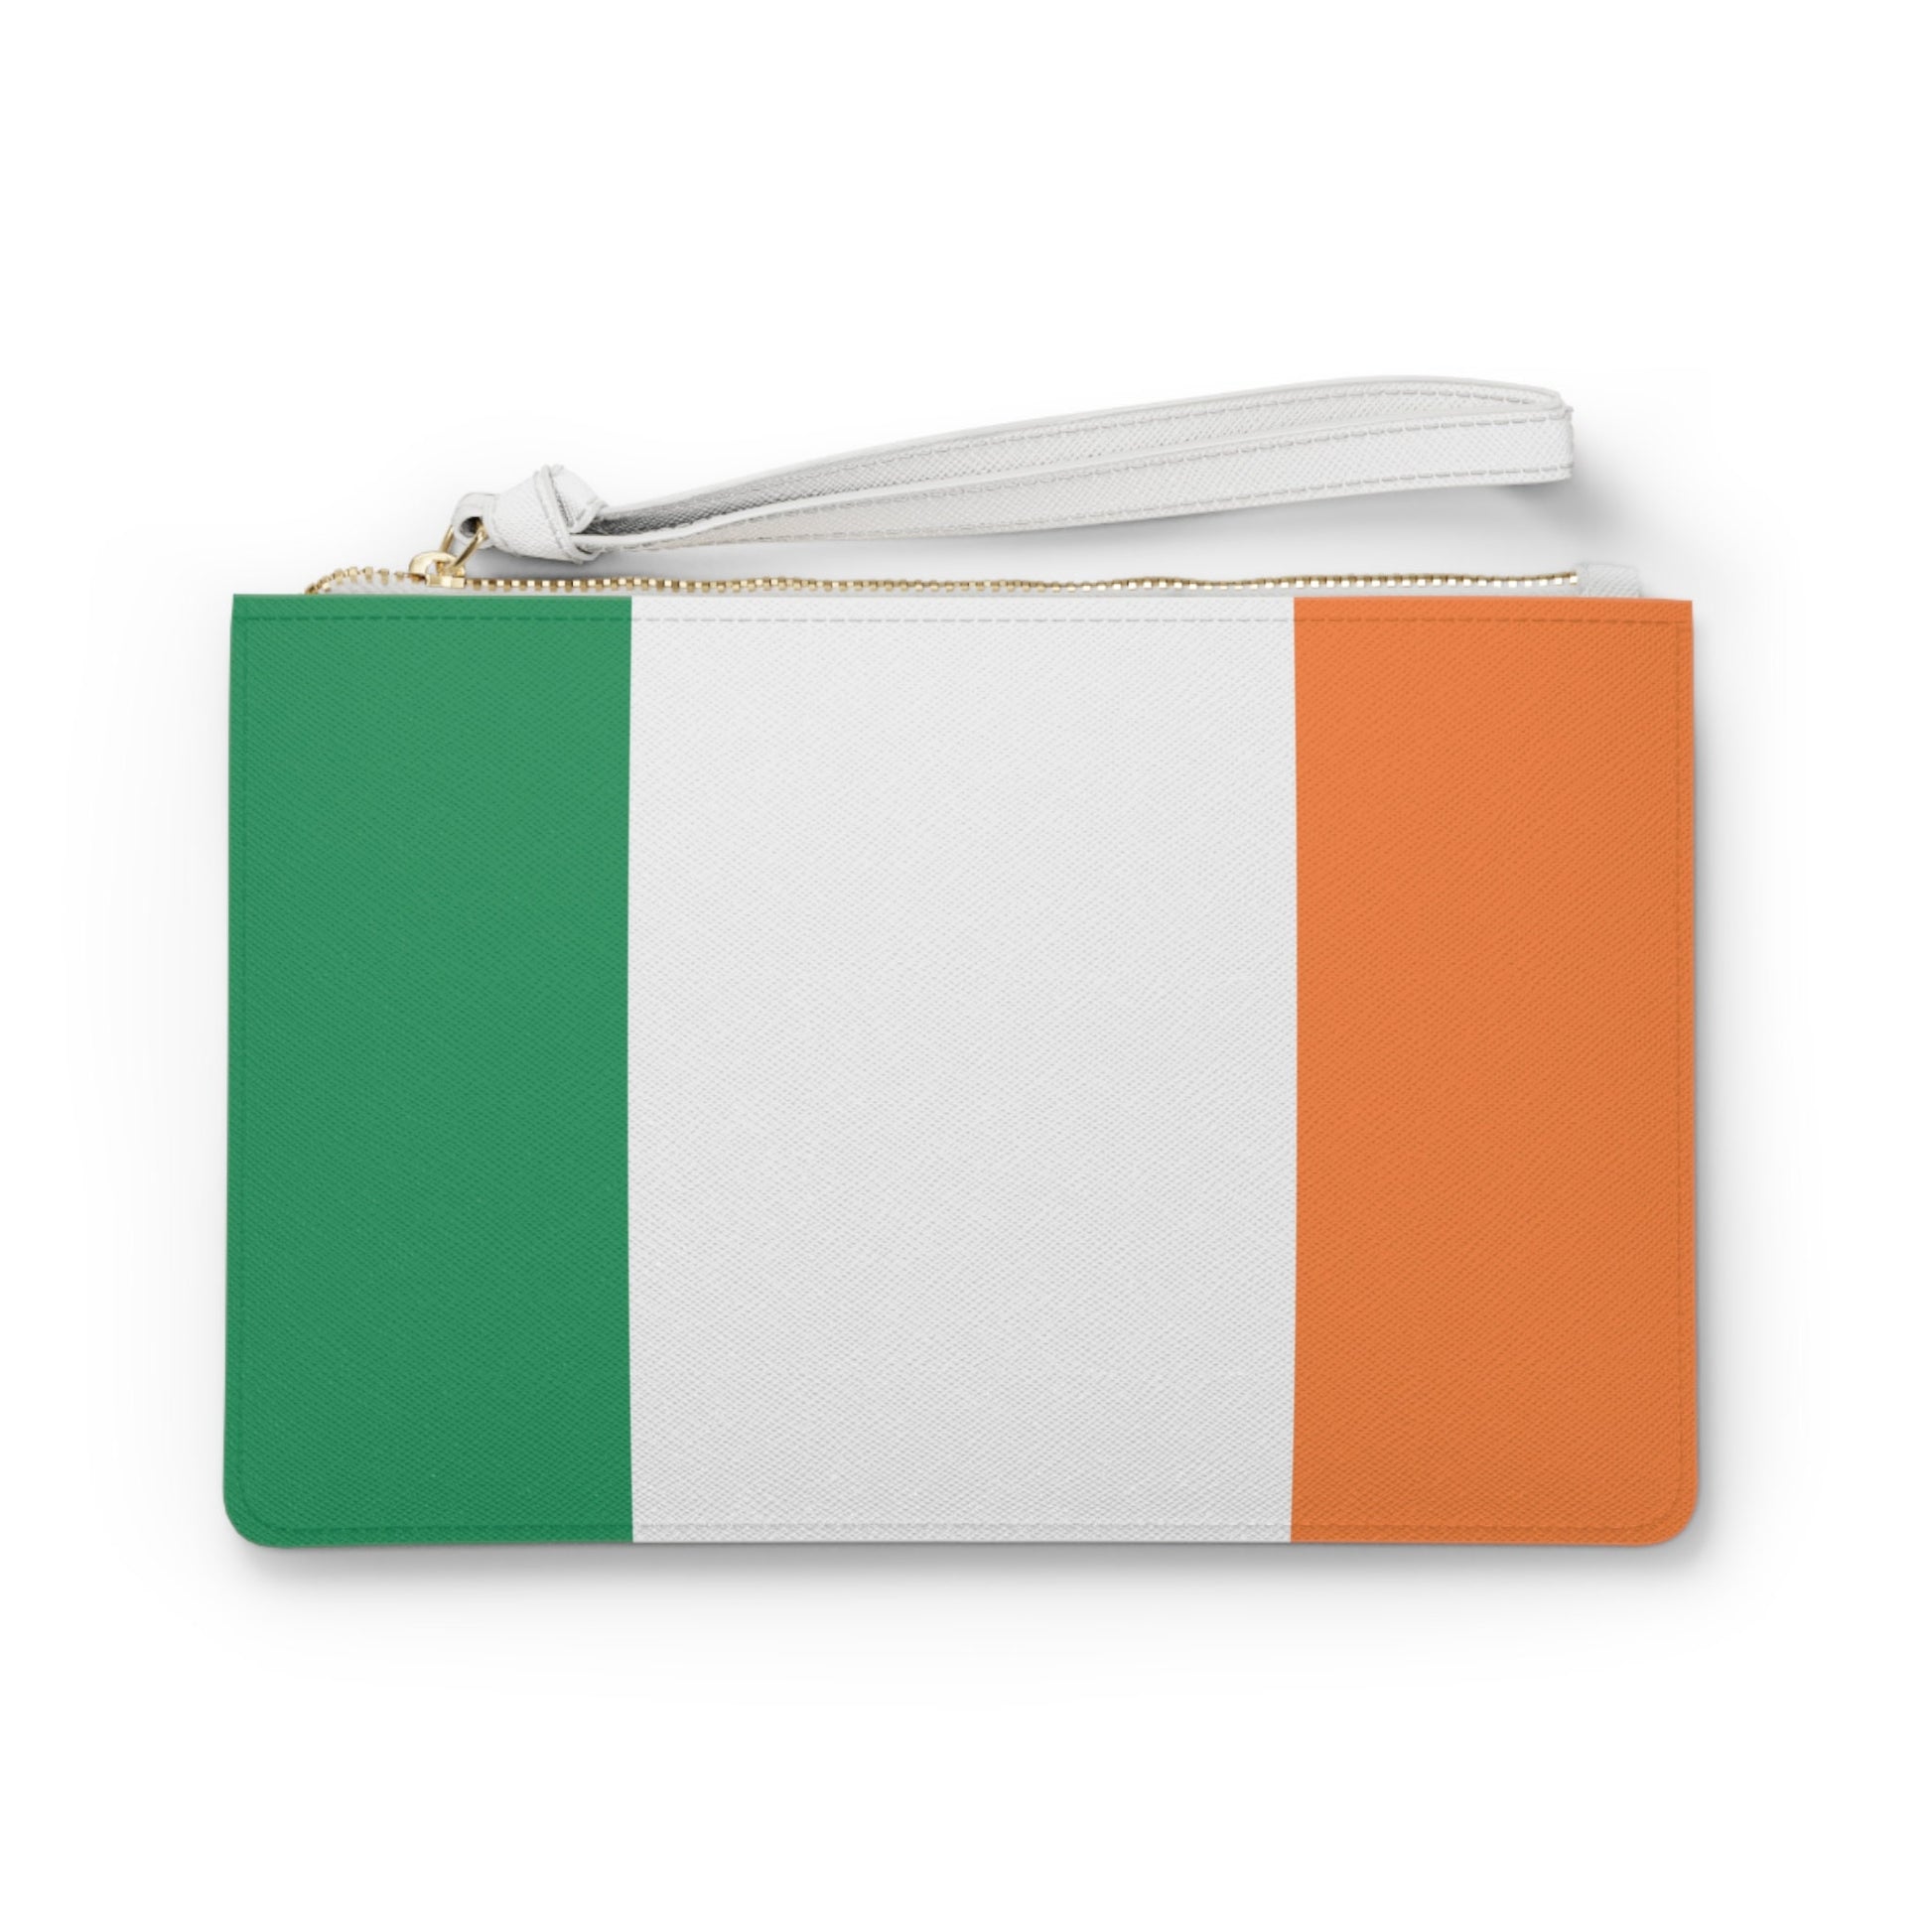 Ireland Flag Clutch Bag